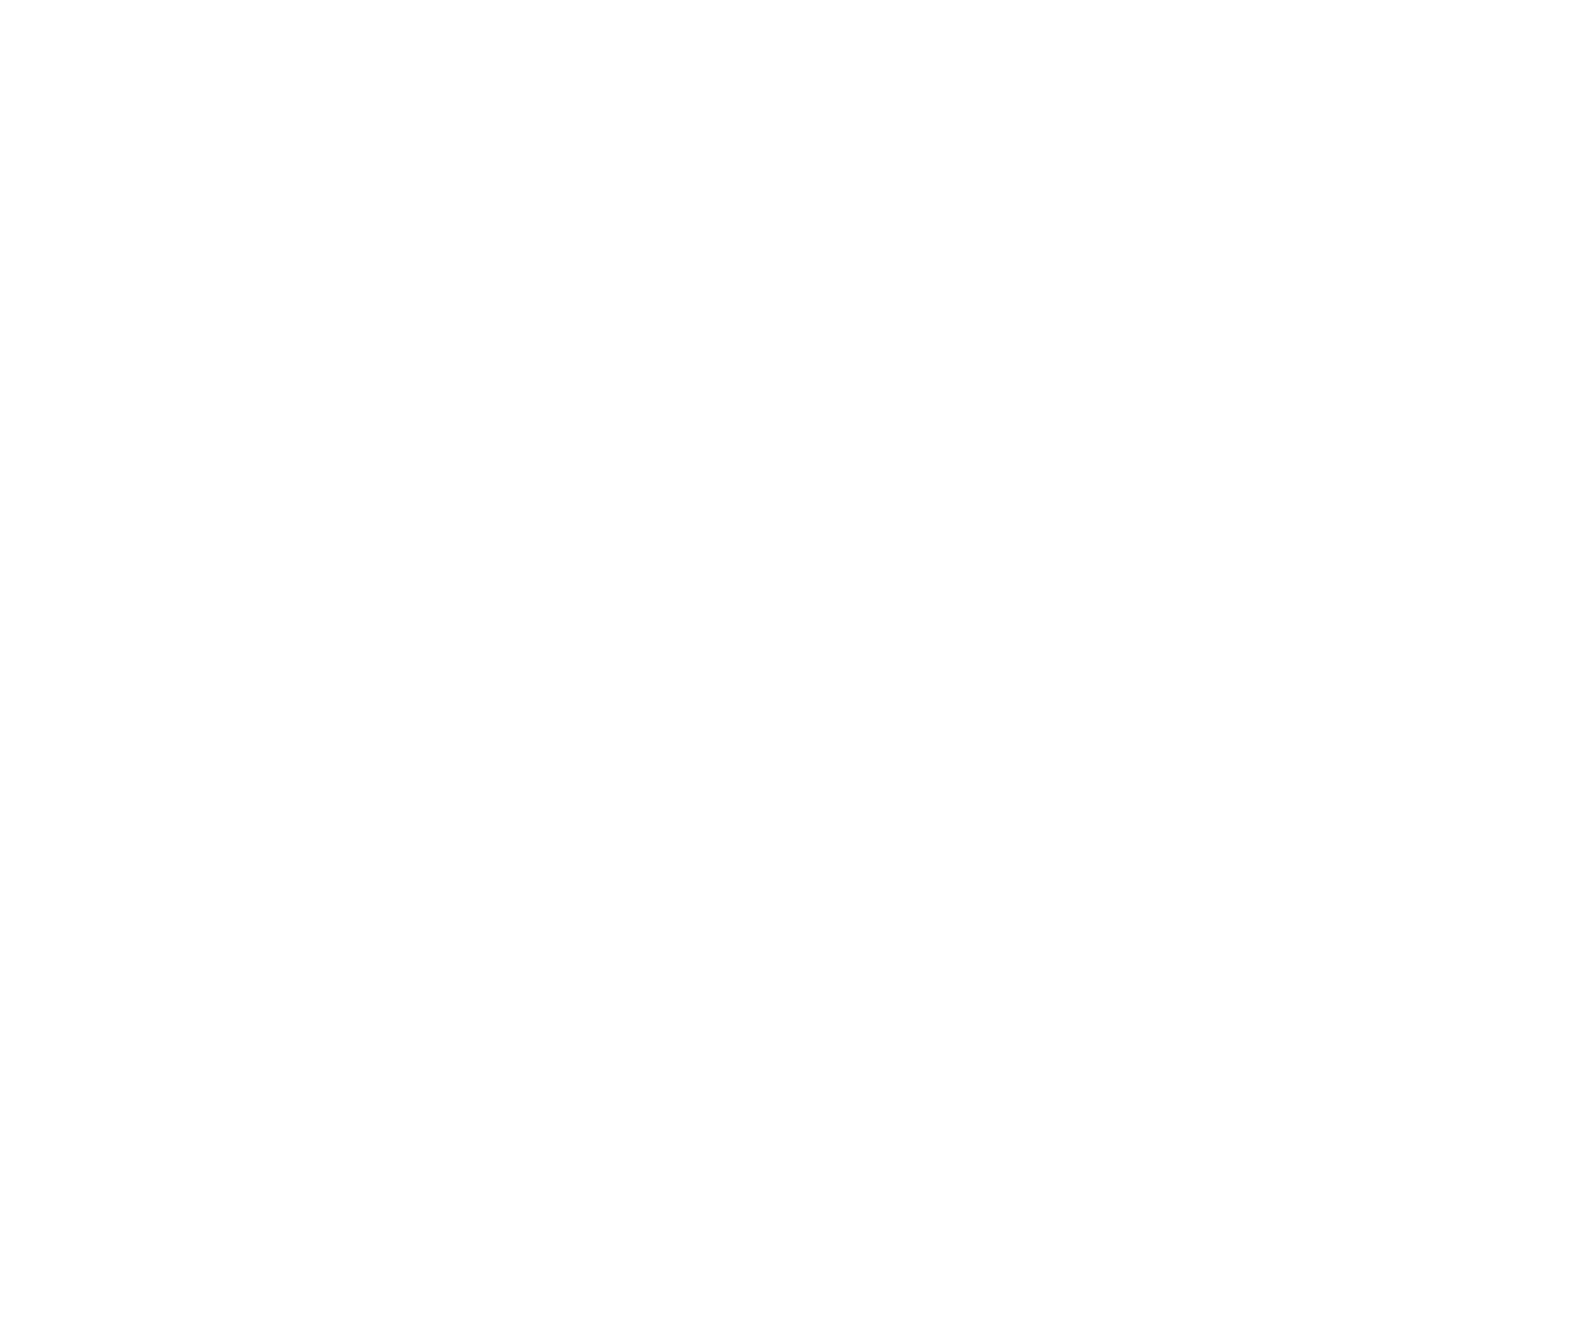 Plug Power logo large for dark backgrounds (transparent PNG)